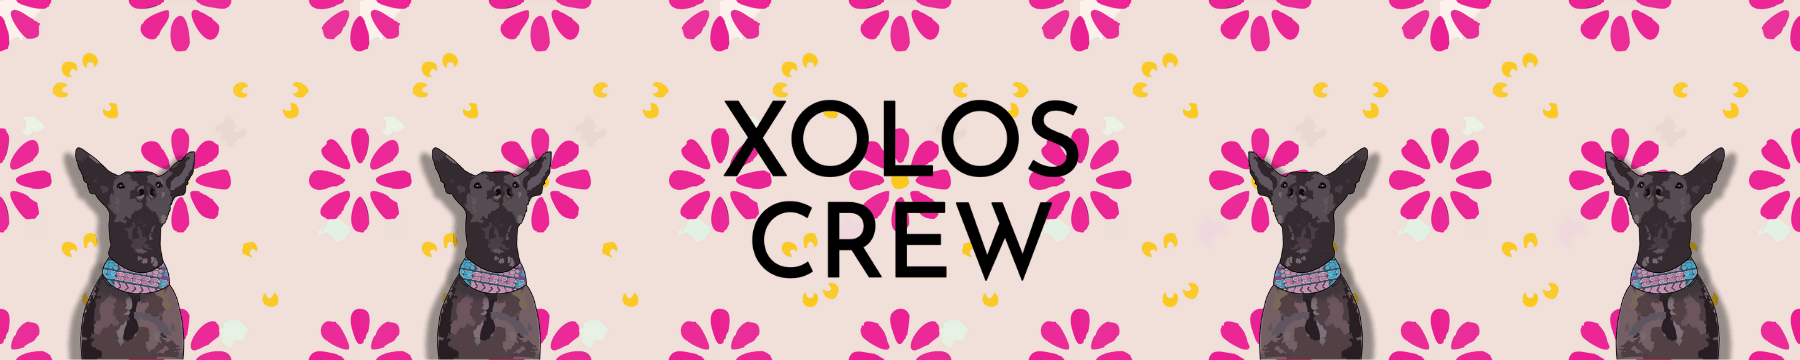 Xolos Crew